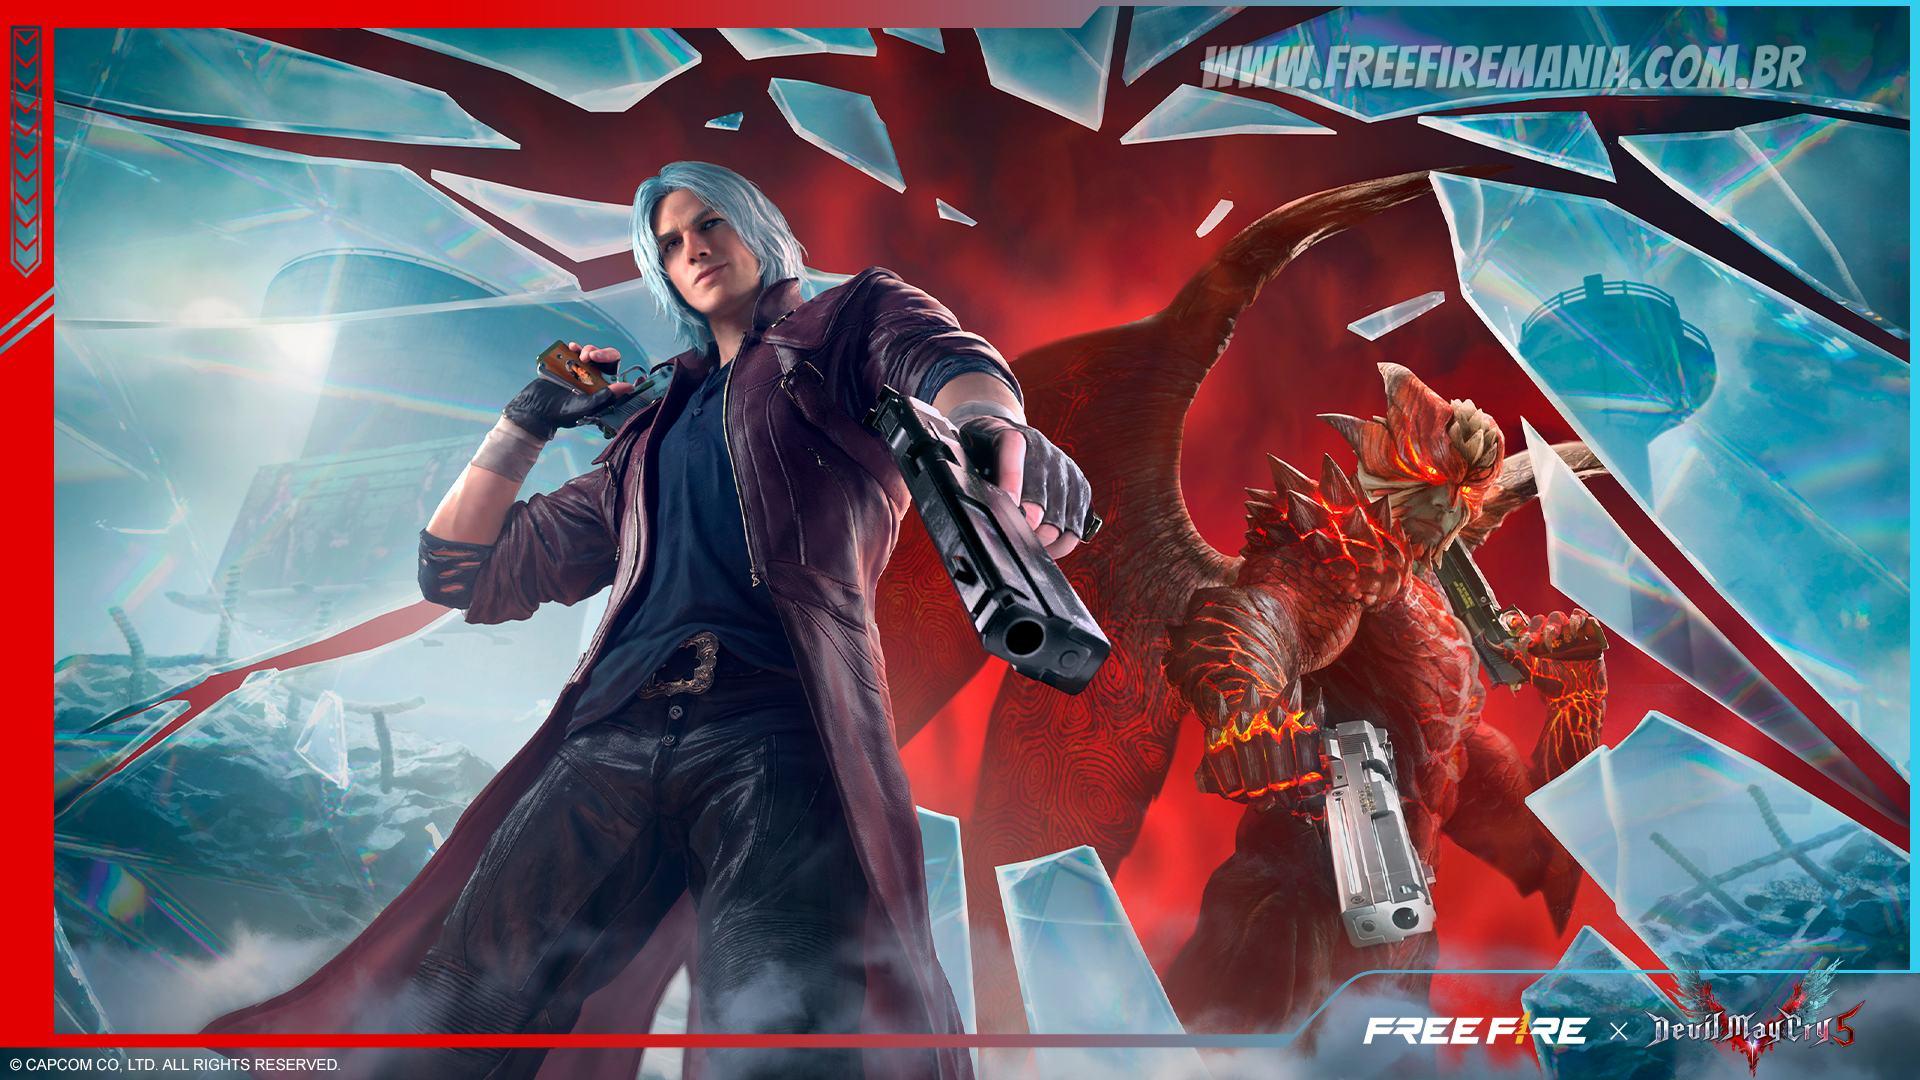 Free Fire: parceria com Devil May Cry 5™ chega ao jogo com skins do Dante e Nero